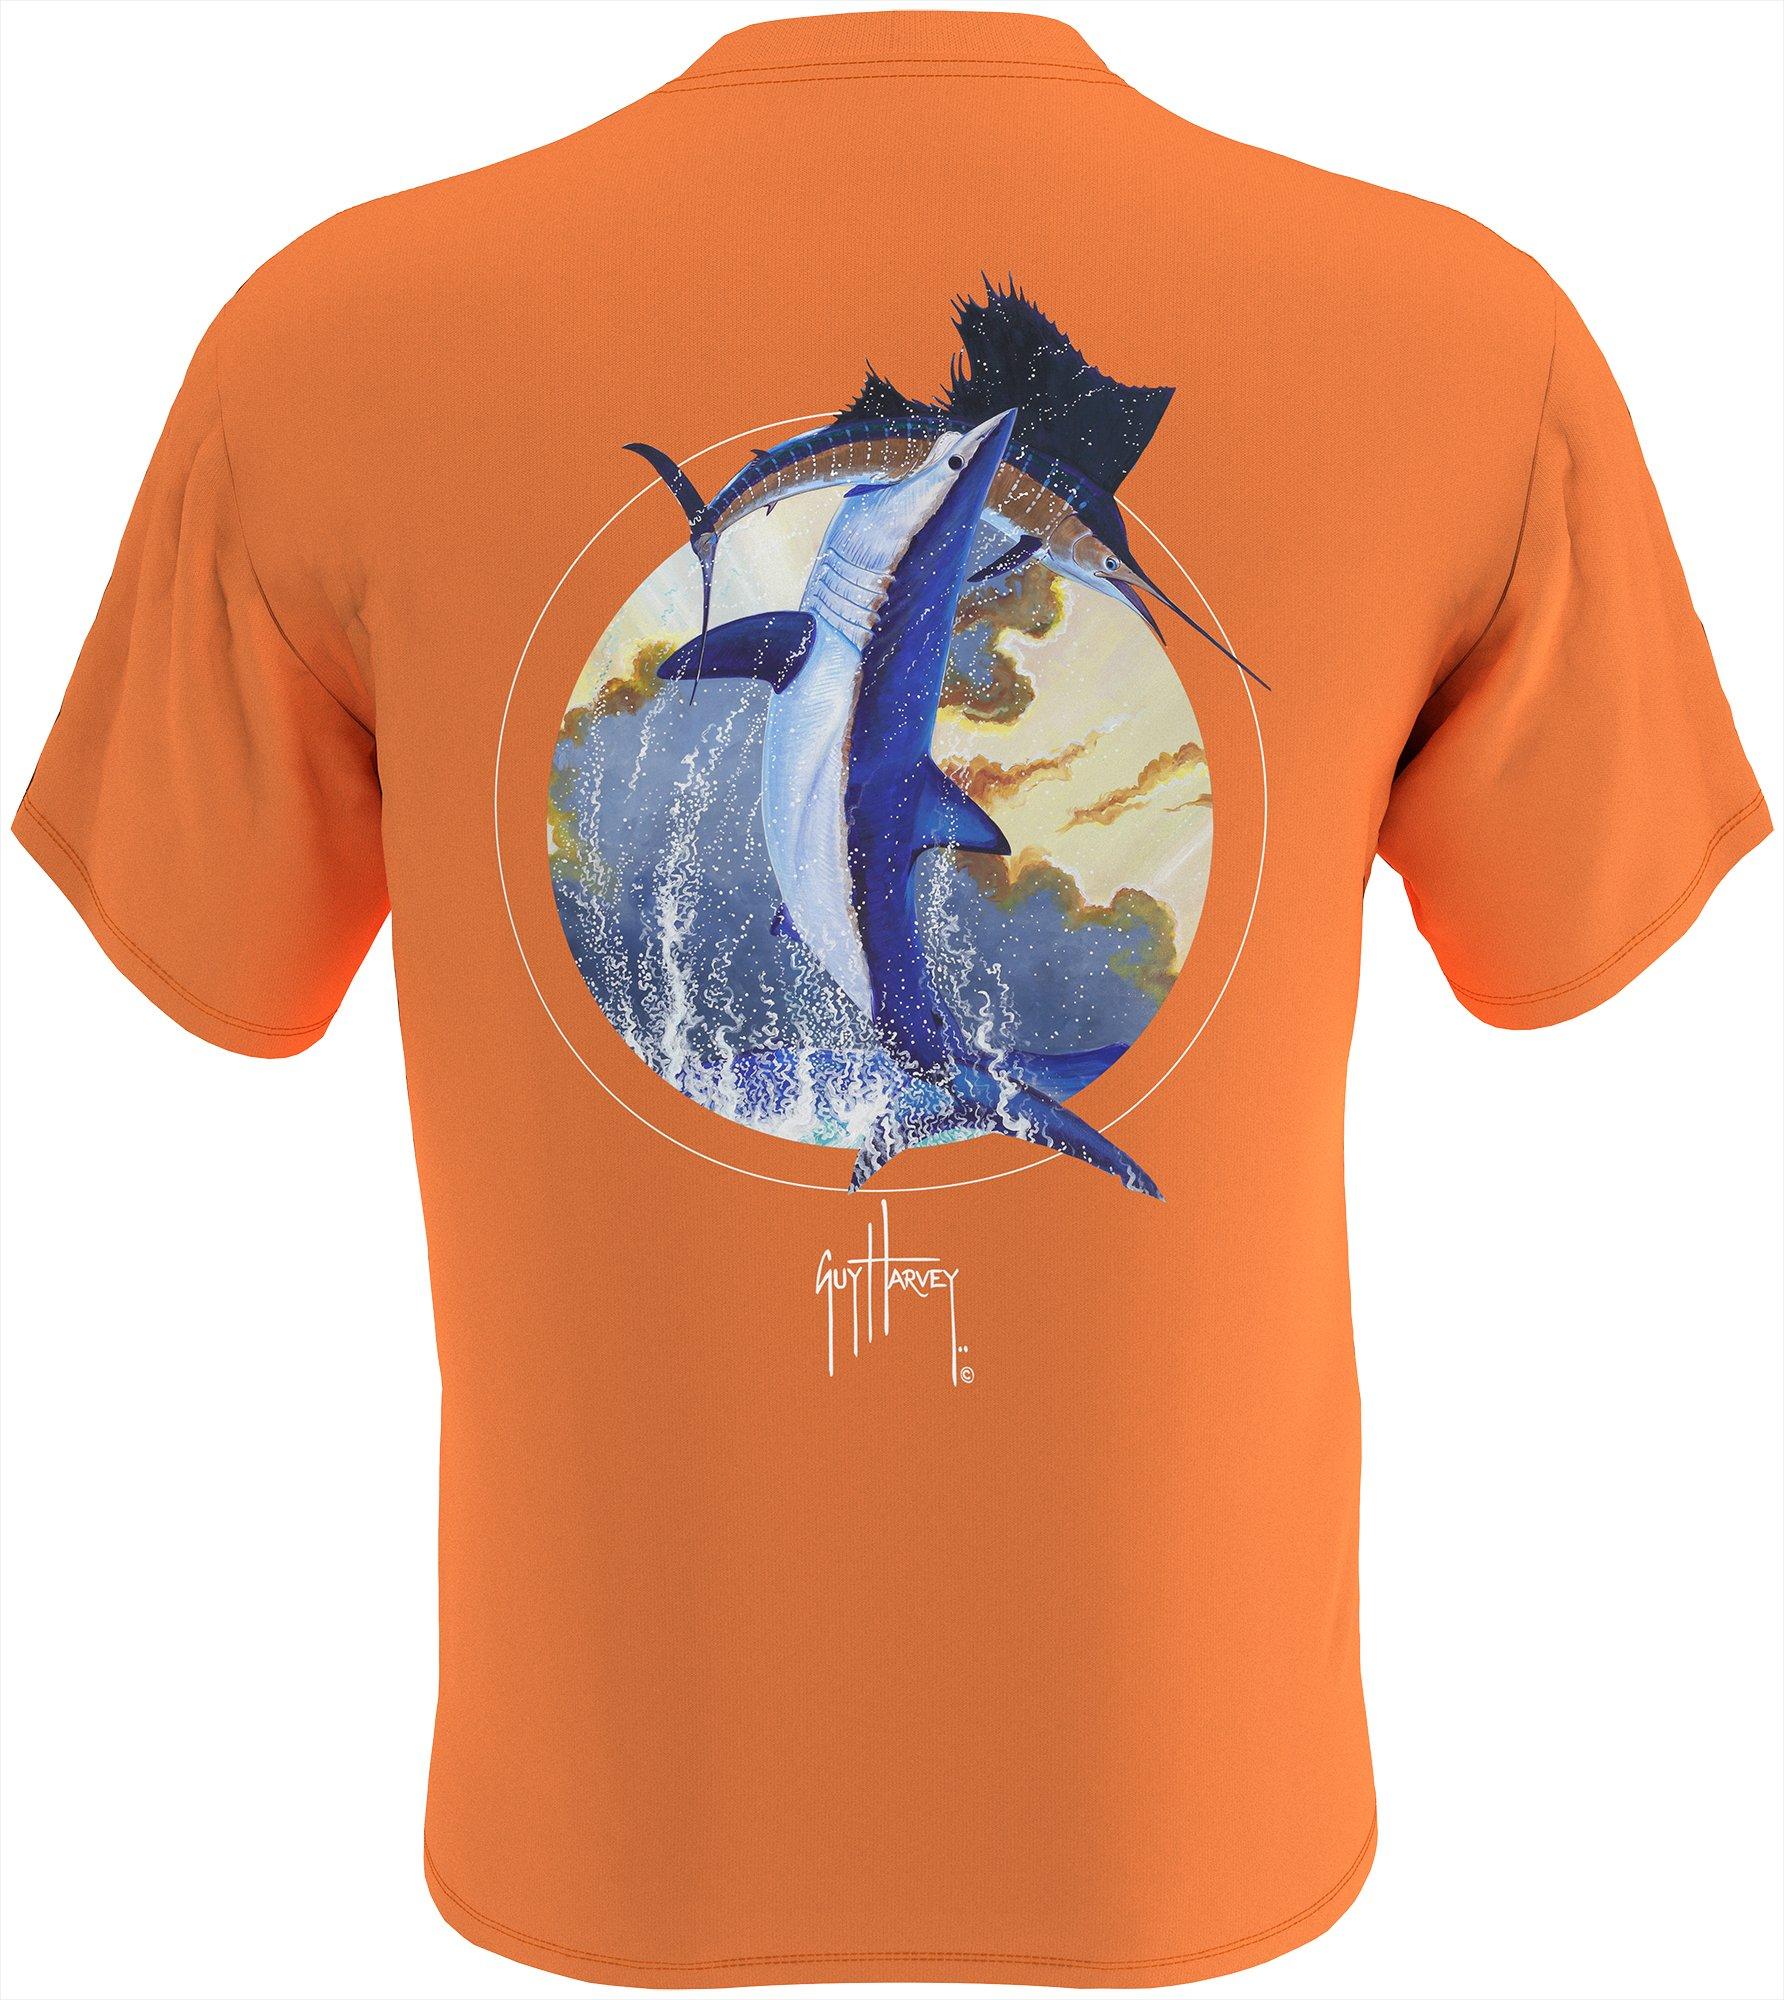 Guy Harvey Mens Mako Power Short Sleeve T-Shirt Medium Orange/blue | eBay